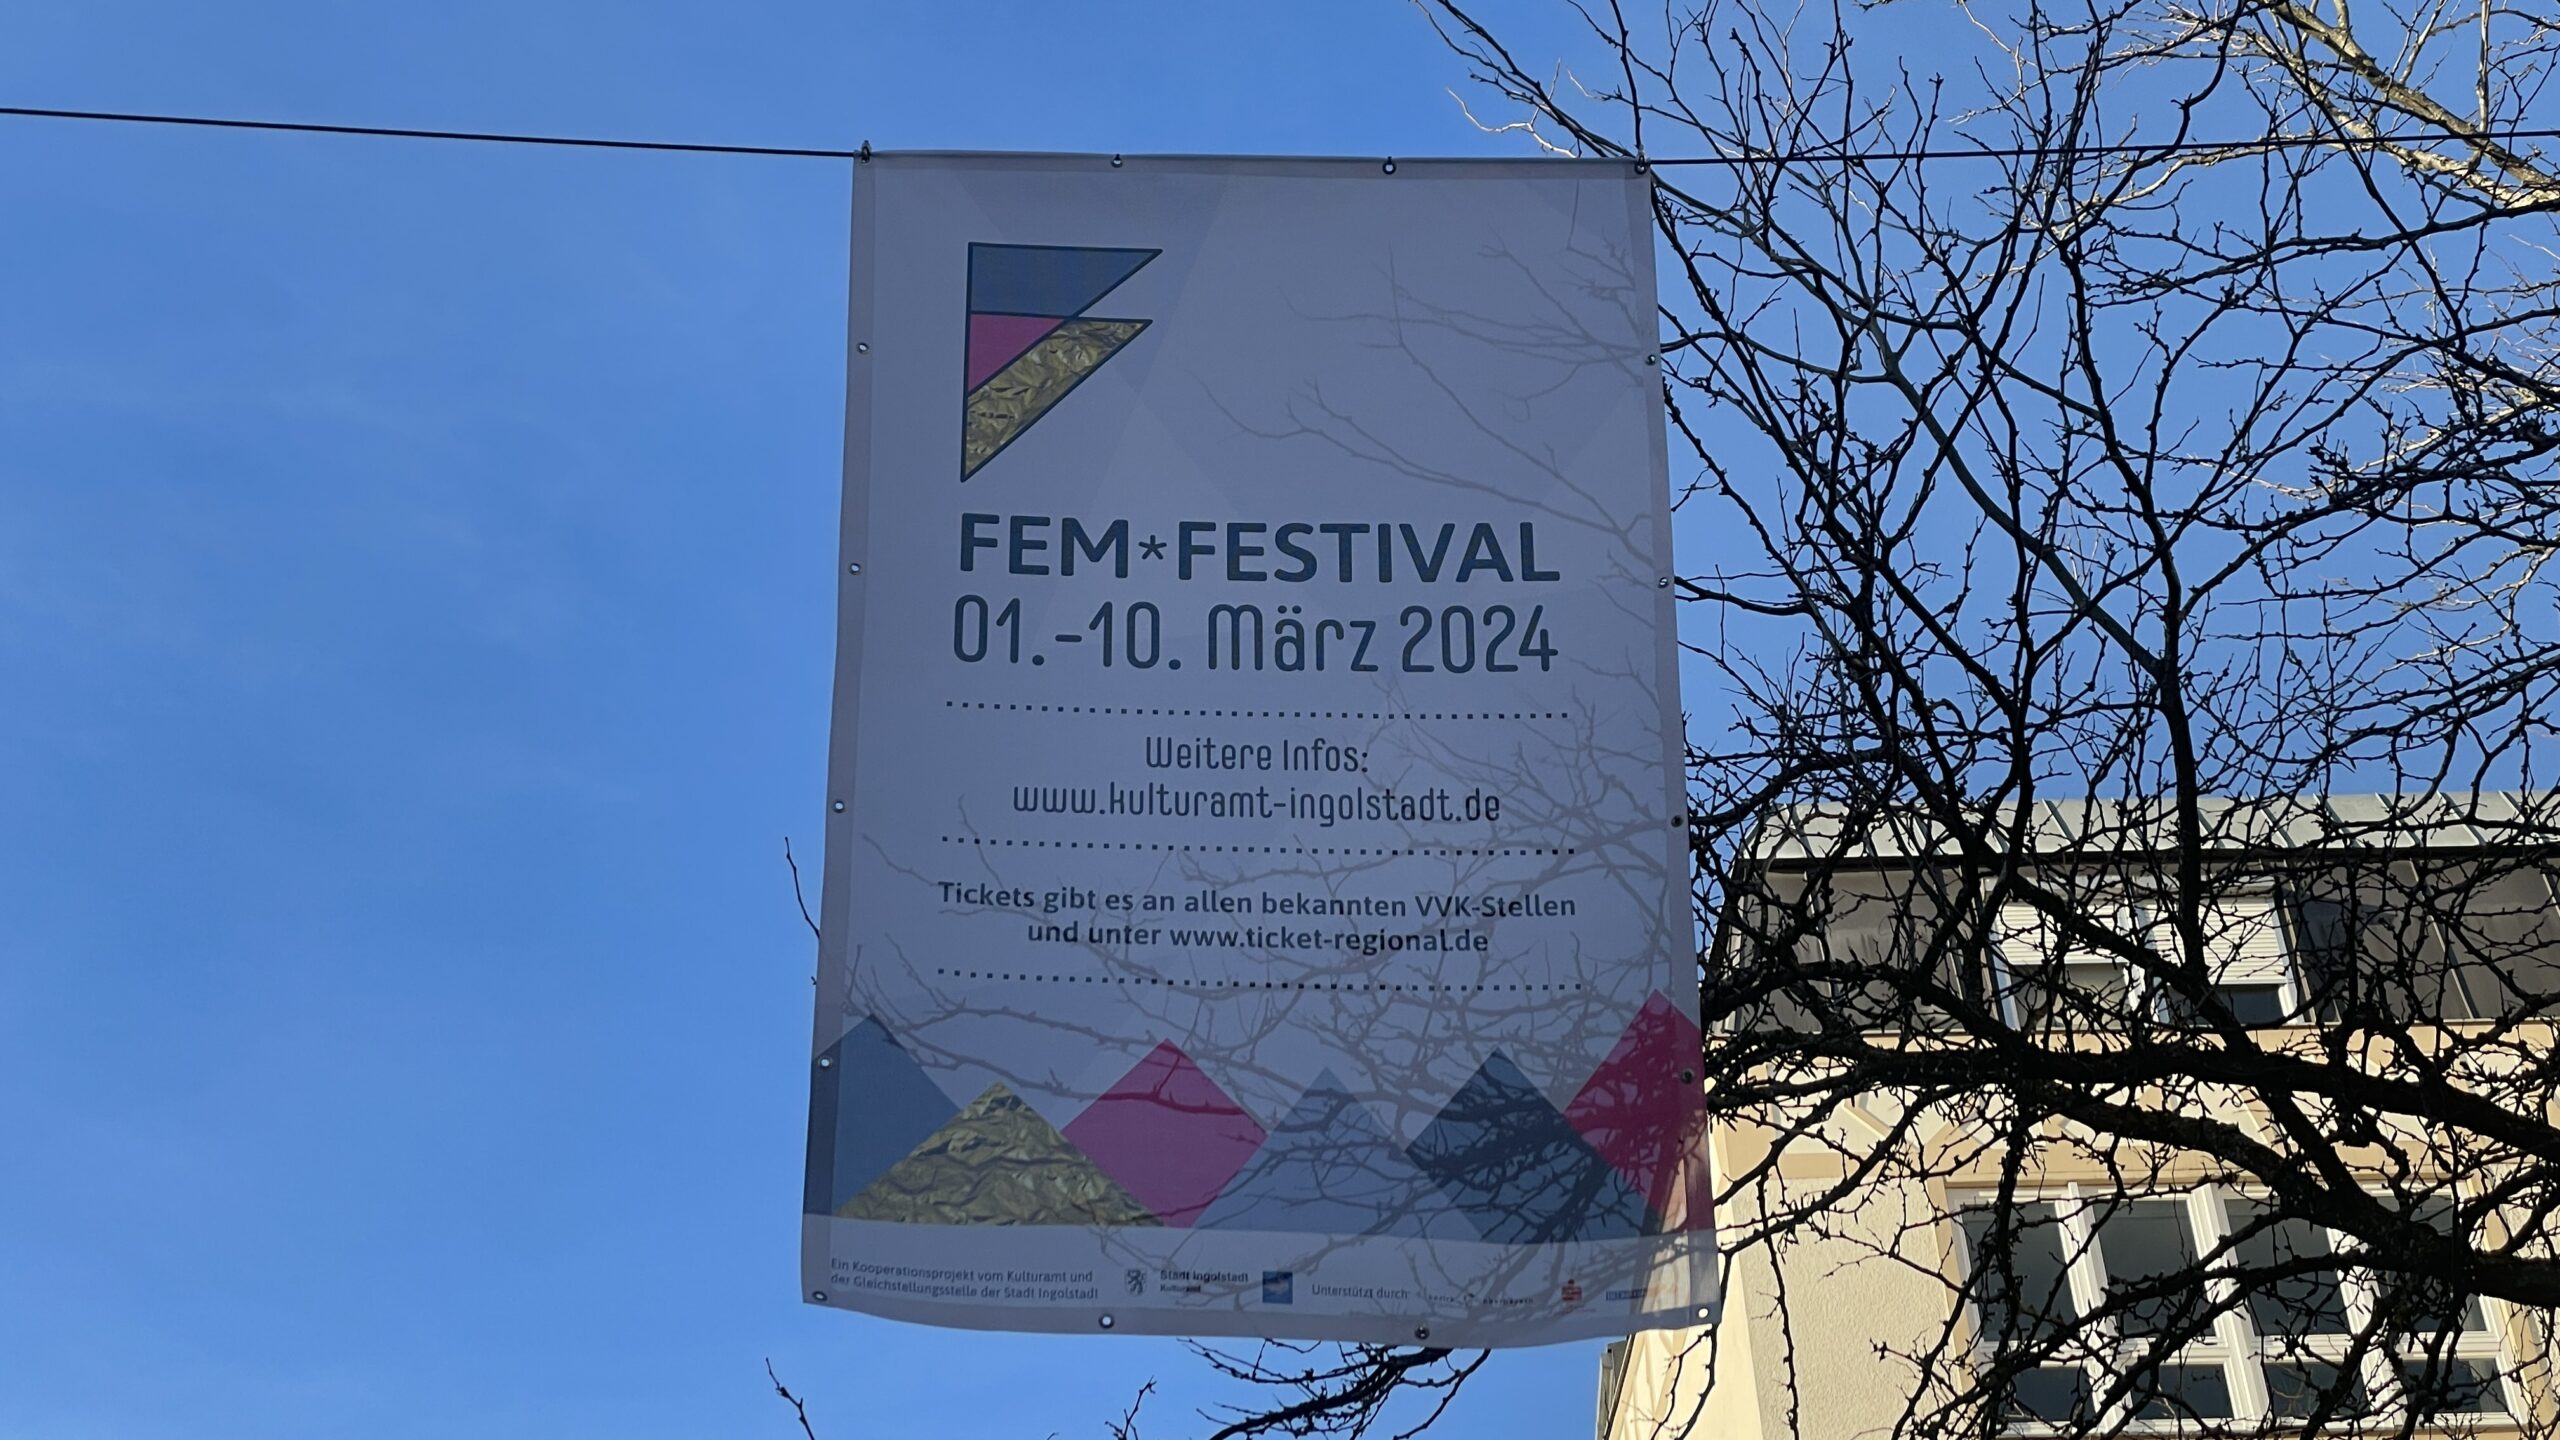 Fem*Festival